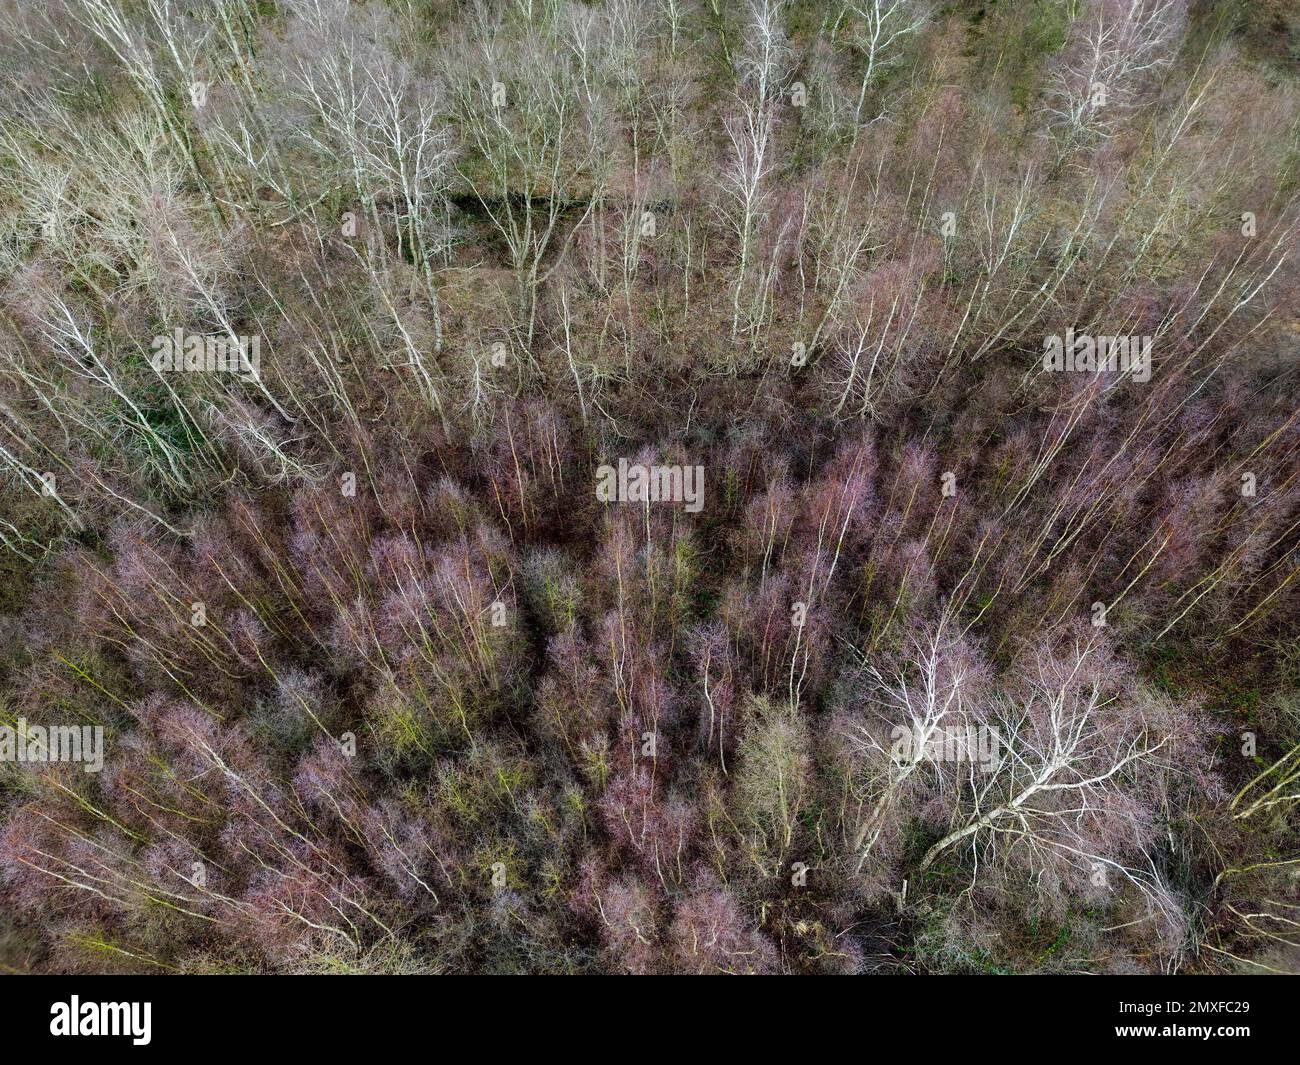 Drohnenfoto von Birken in einem Moor in Flintbek, Schleswig-Holstein, Germania Foto Stock